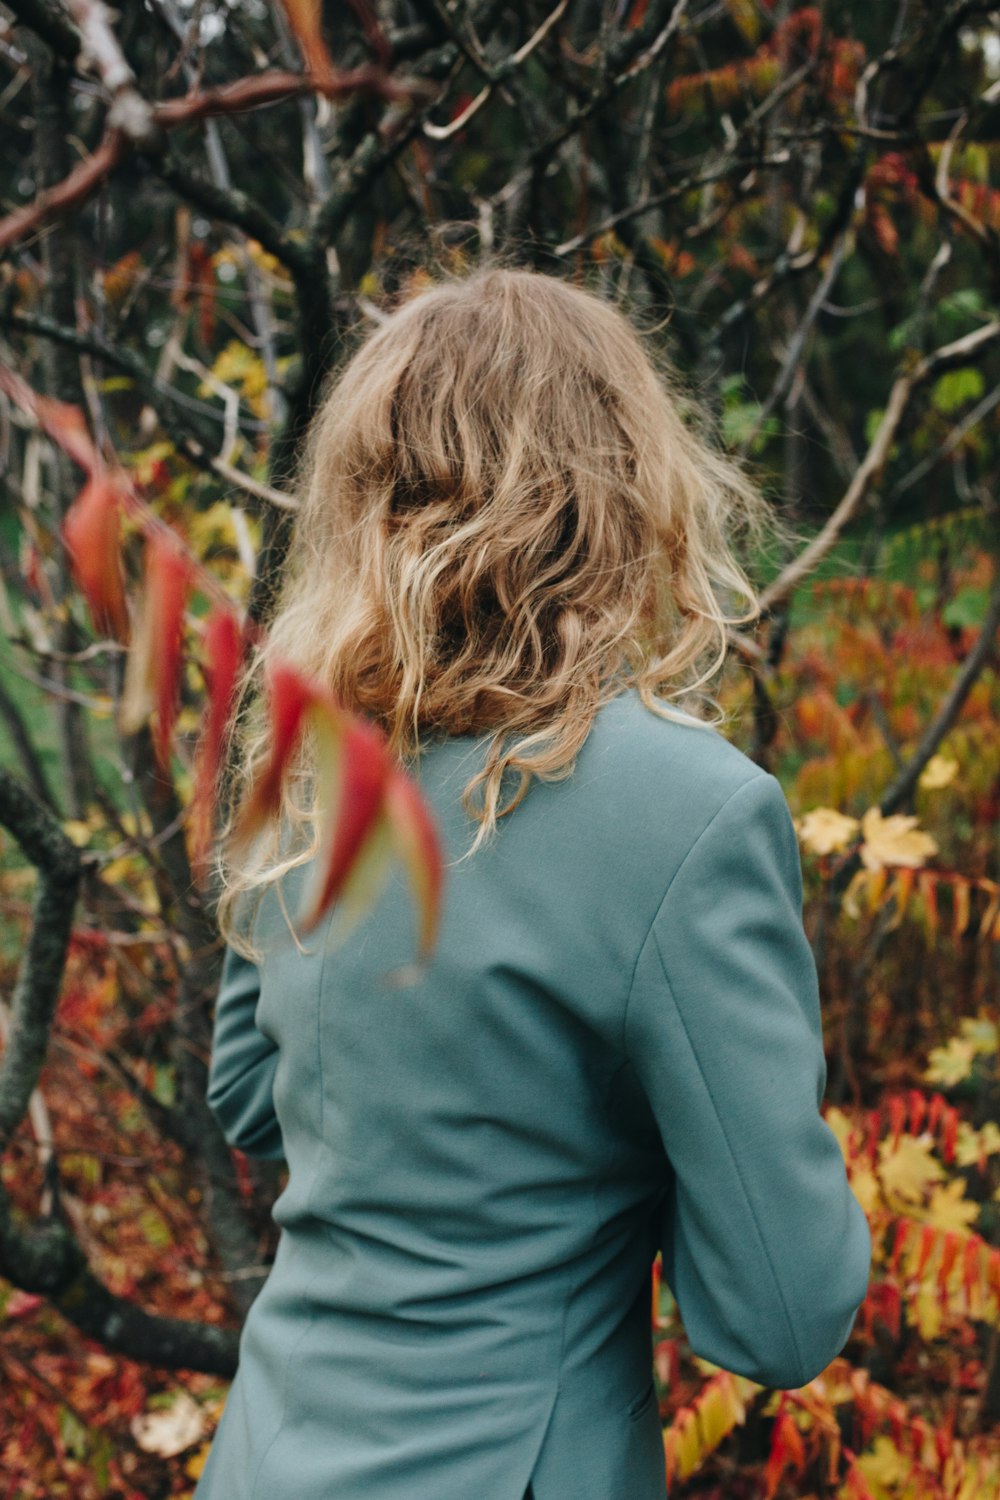 mulher na camisa cinza de manga comprida em pé perto de plantas marrons e verdes durante o dia